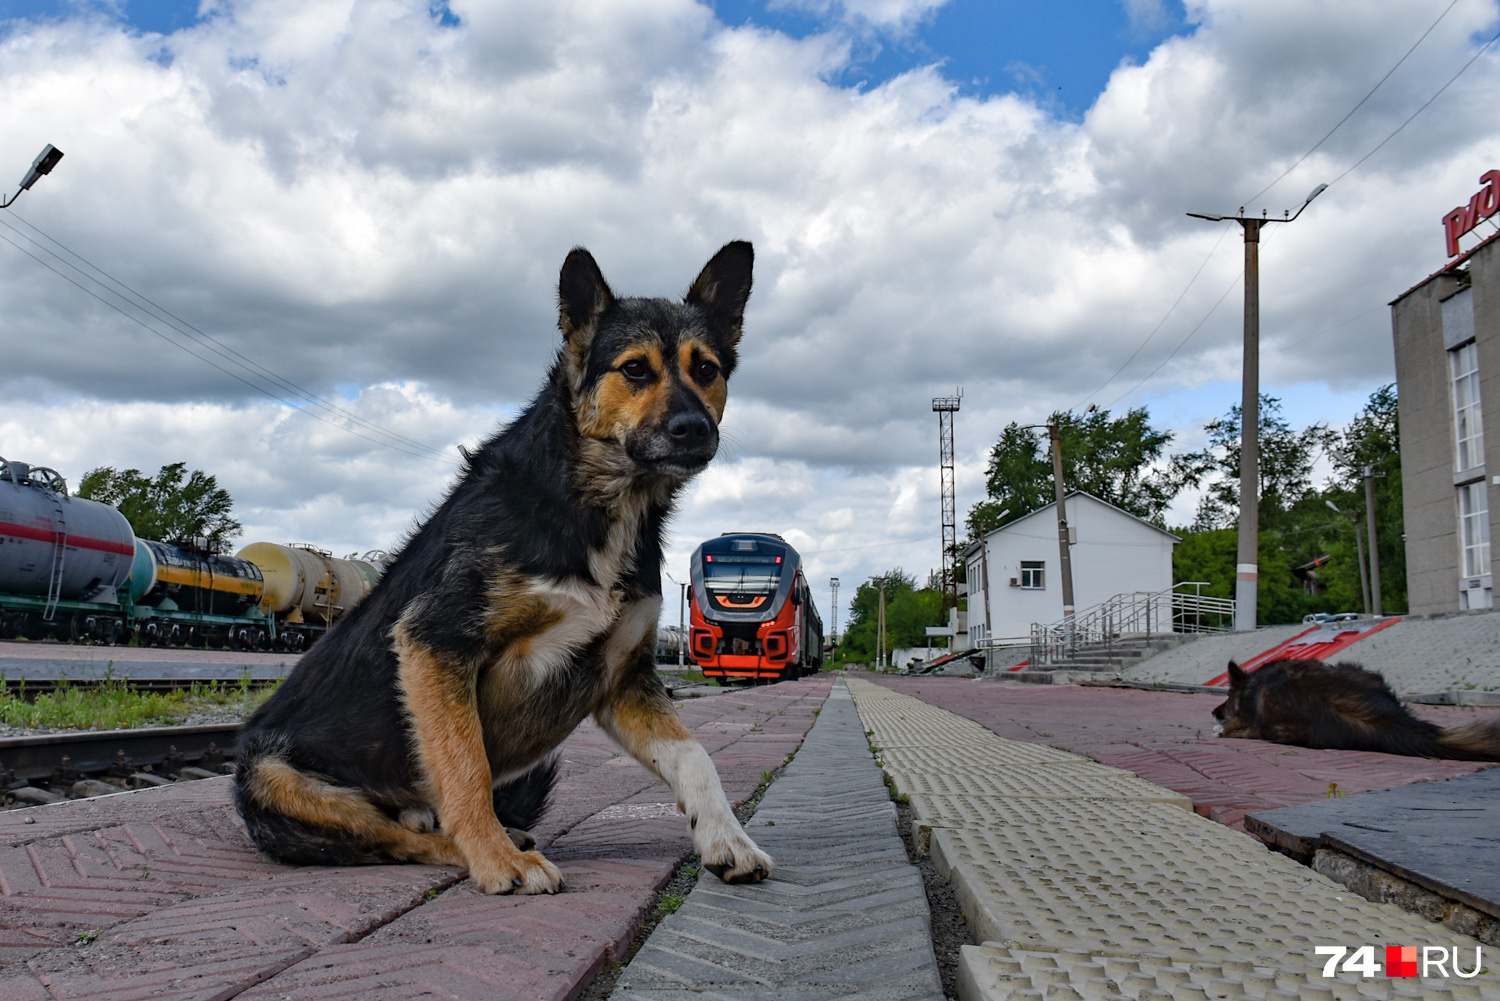 Вокзальный пес и красивый рельсовый автобус «Орлан» на дизельной тяге. Поехал в Екатеринбург